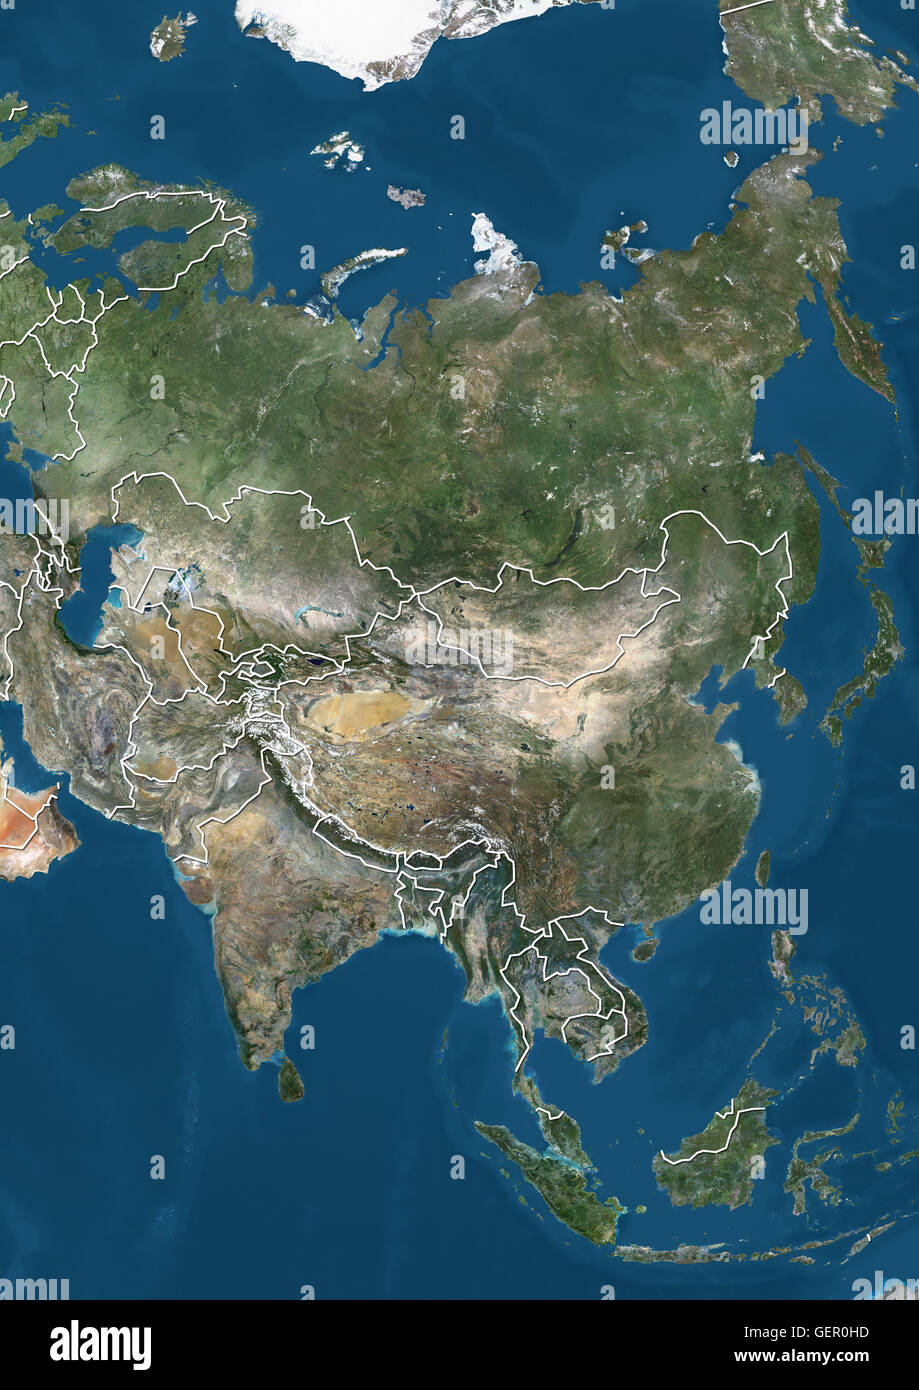 Vista satellitare di Asia (con i confini del paese). Questa immagine è stata elaborata sulla base dei dati acquisiti dal satellite Landsat 7 & 8 satelliti. Foto Stock